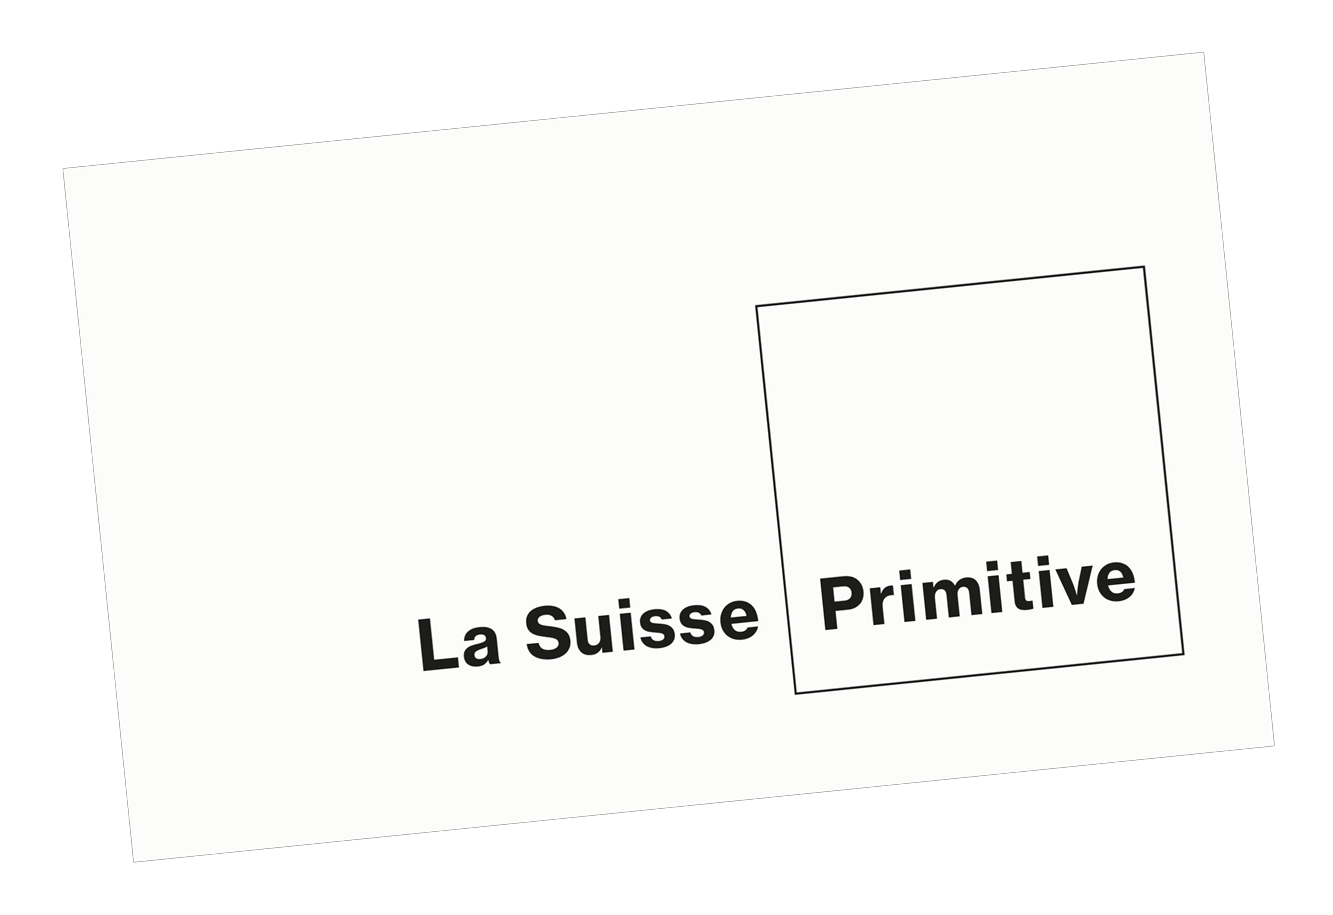 La Suisse Primitive